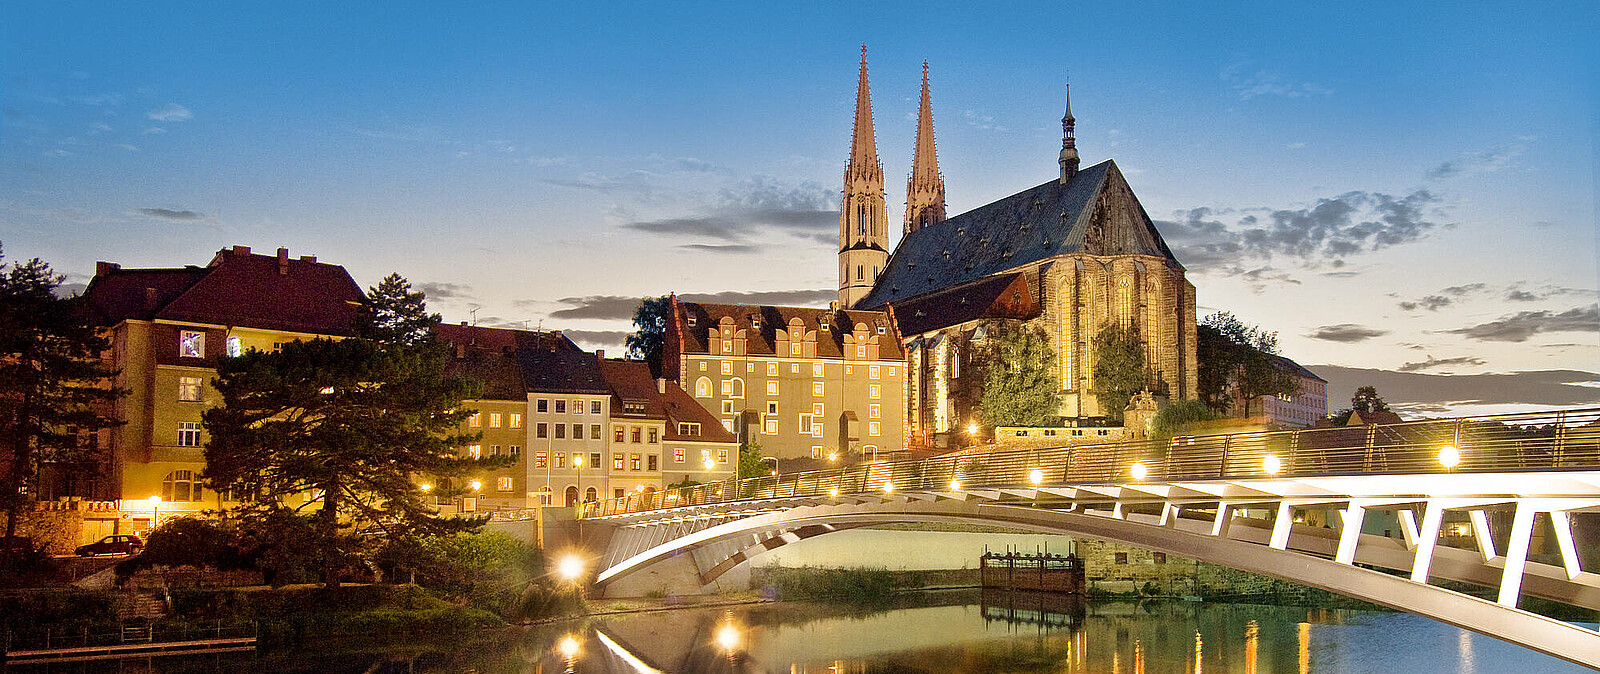 Görlitz und Schlesien sind ideale Ausgangspunkte für Ihre Gruppenreise in Sachsen